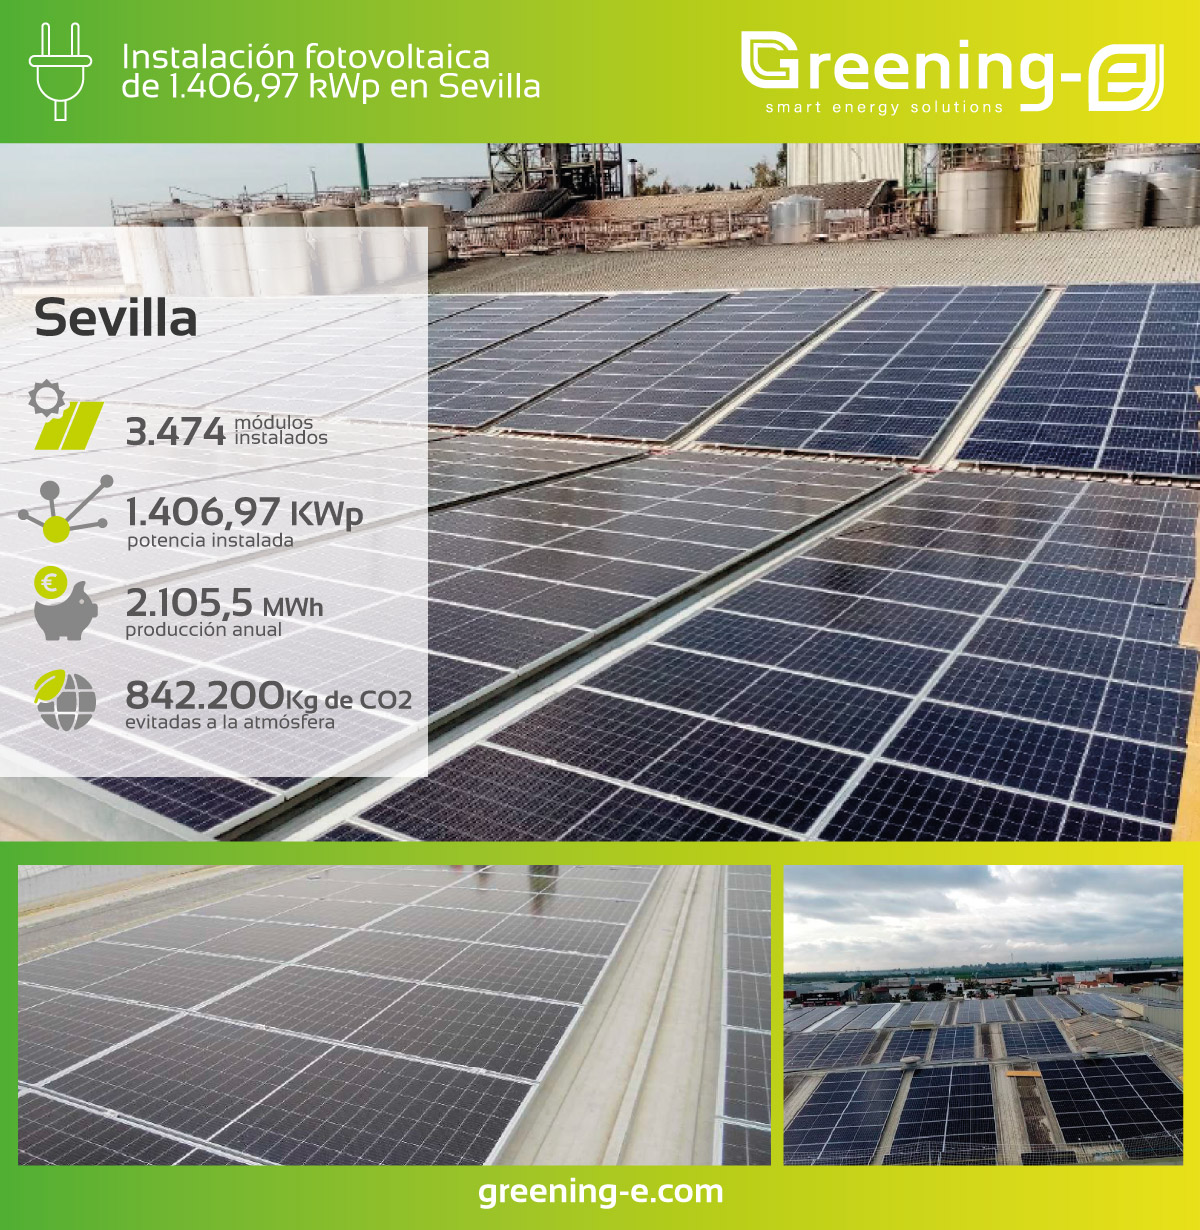 Instalaciones Greening-e: Instalación fotovoltaica de 1.406,97 kWp en Sevilla